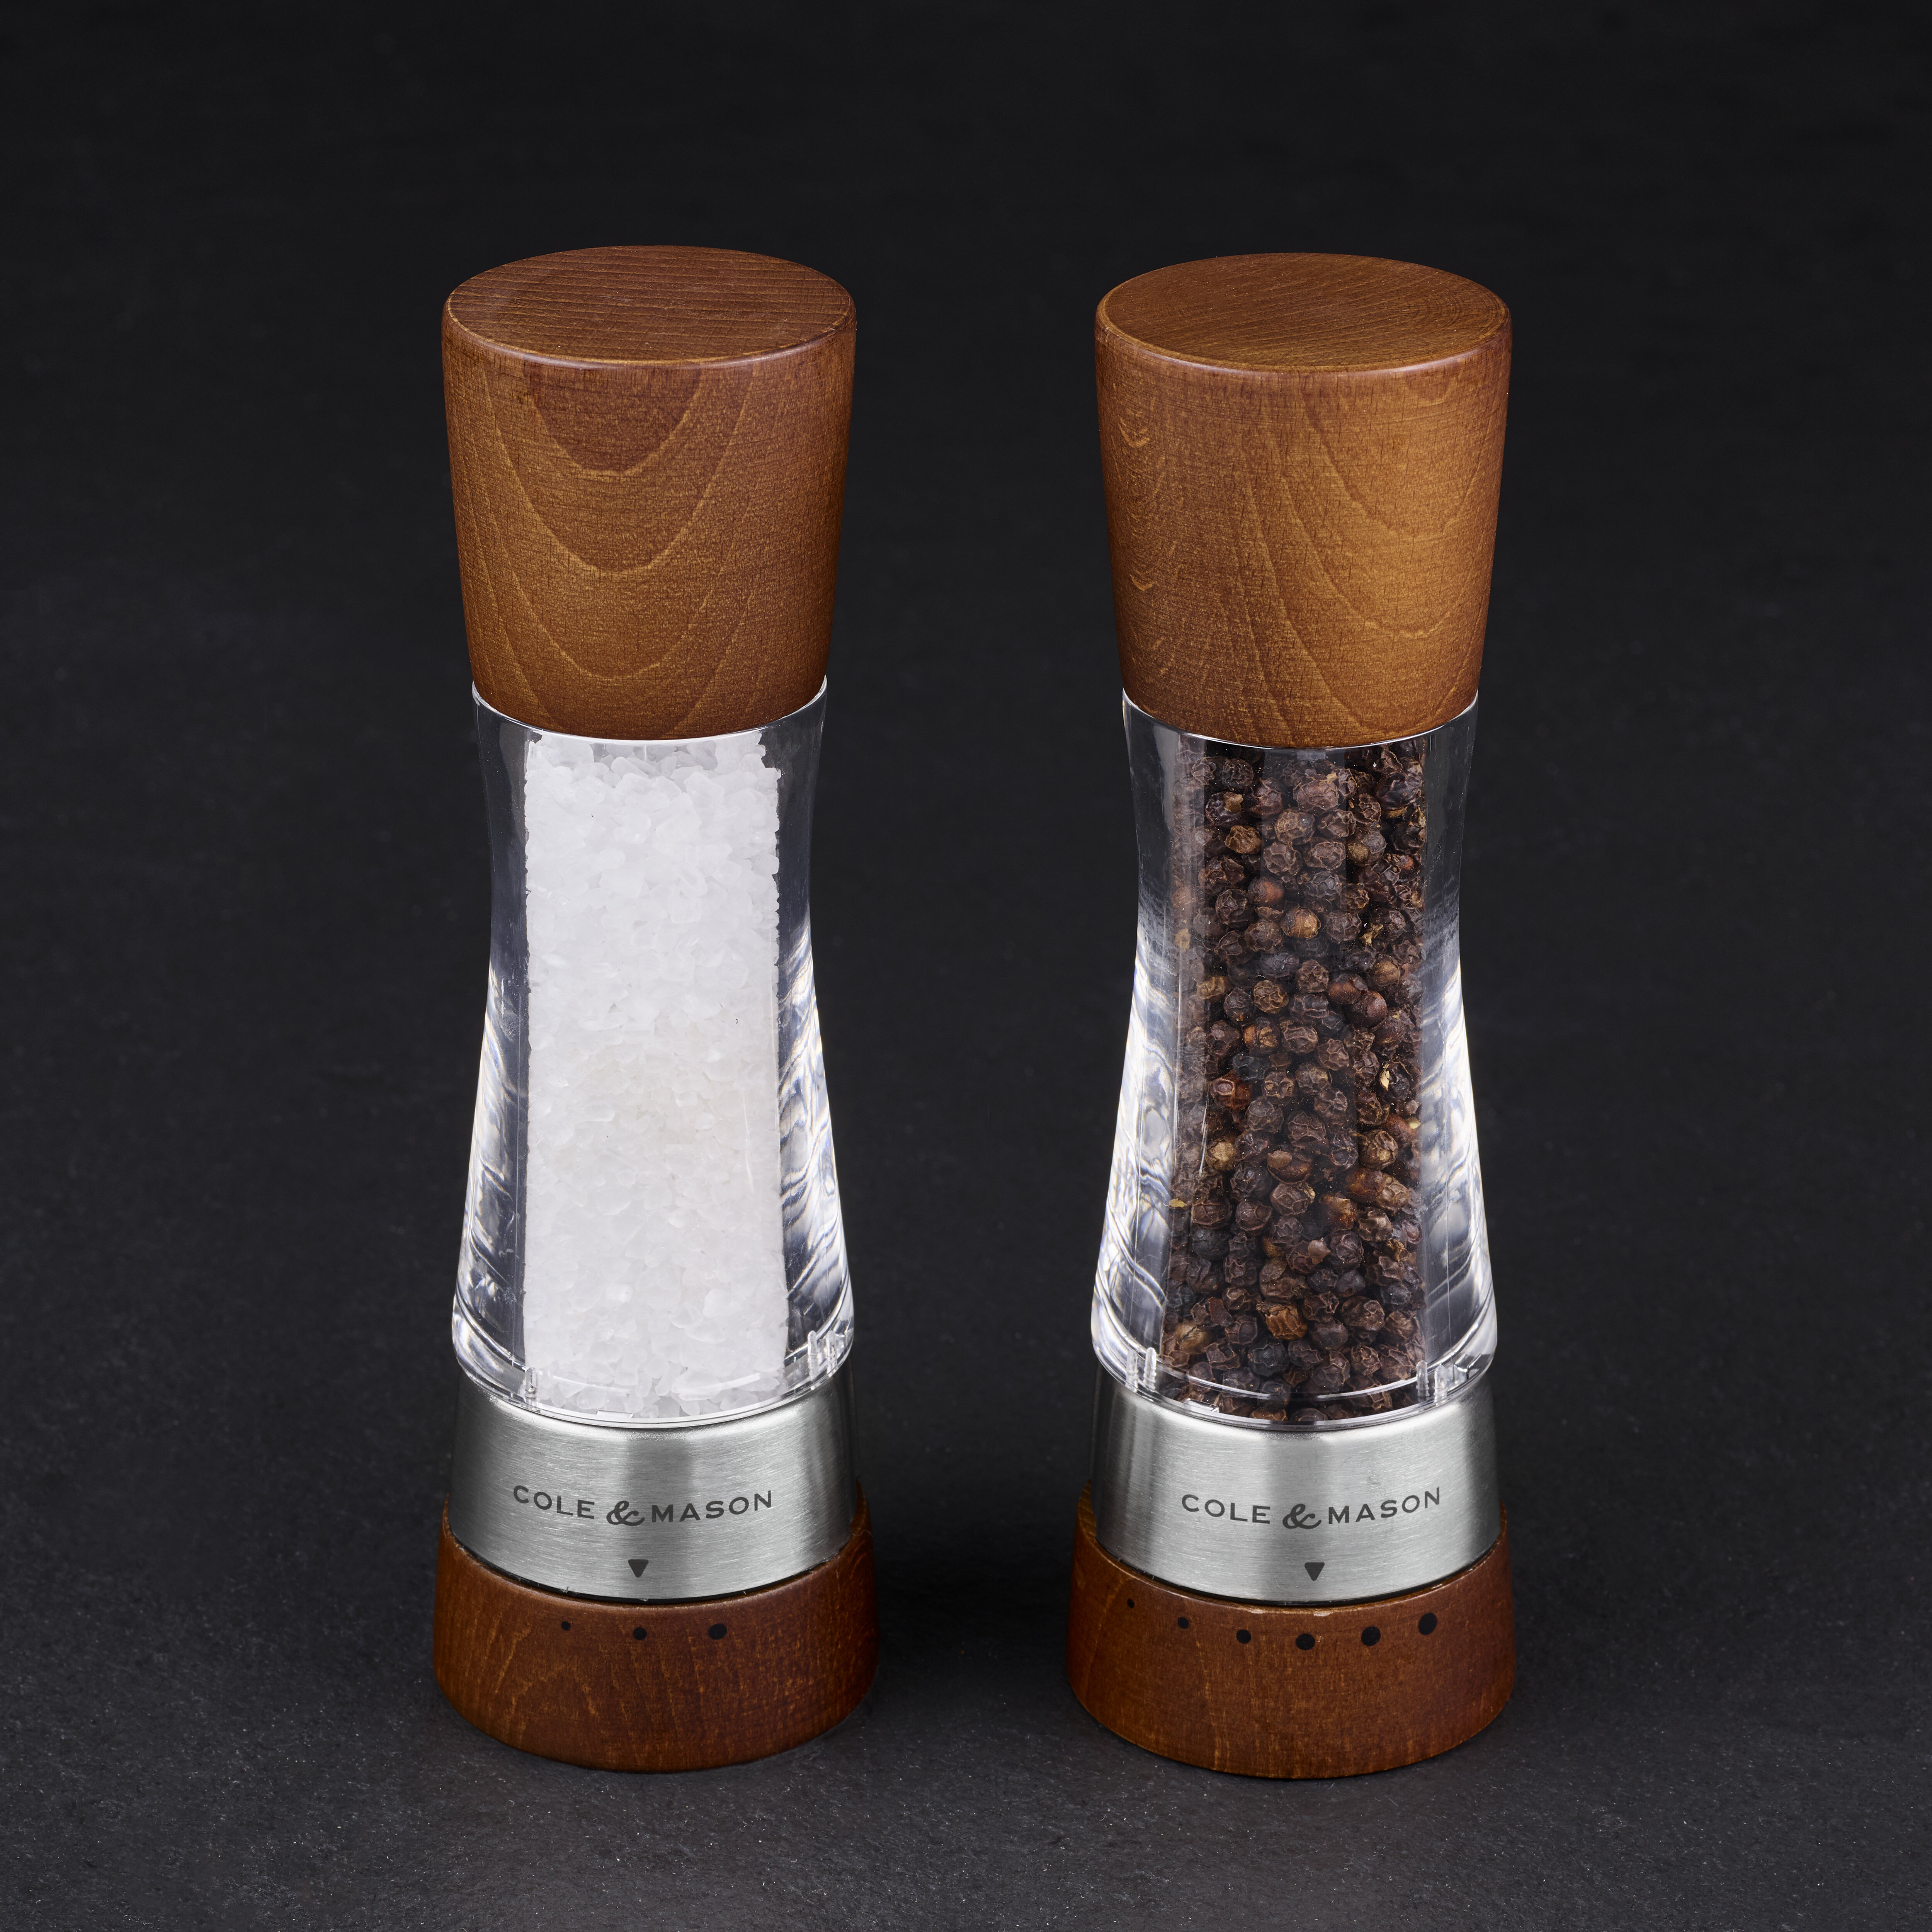 https://assets.wfcdn.com/im/16650806/compr-r85/1820/182055890/cole-mason-derwent-forest-wood-salt-pepper-grinder-gift-set.jpg